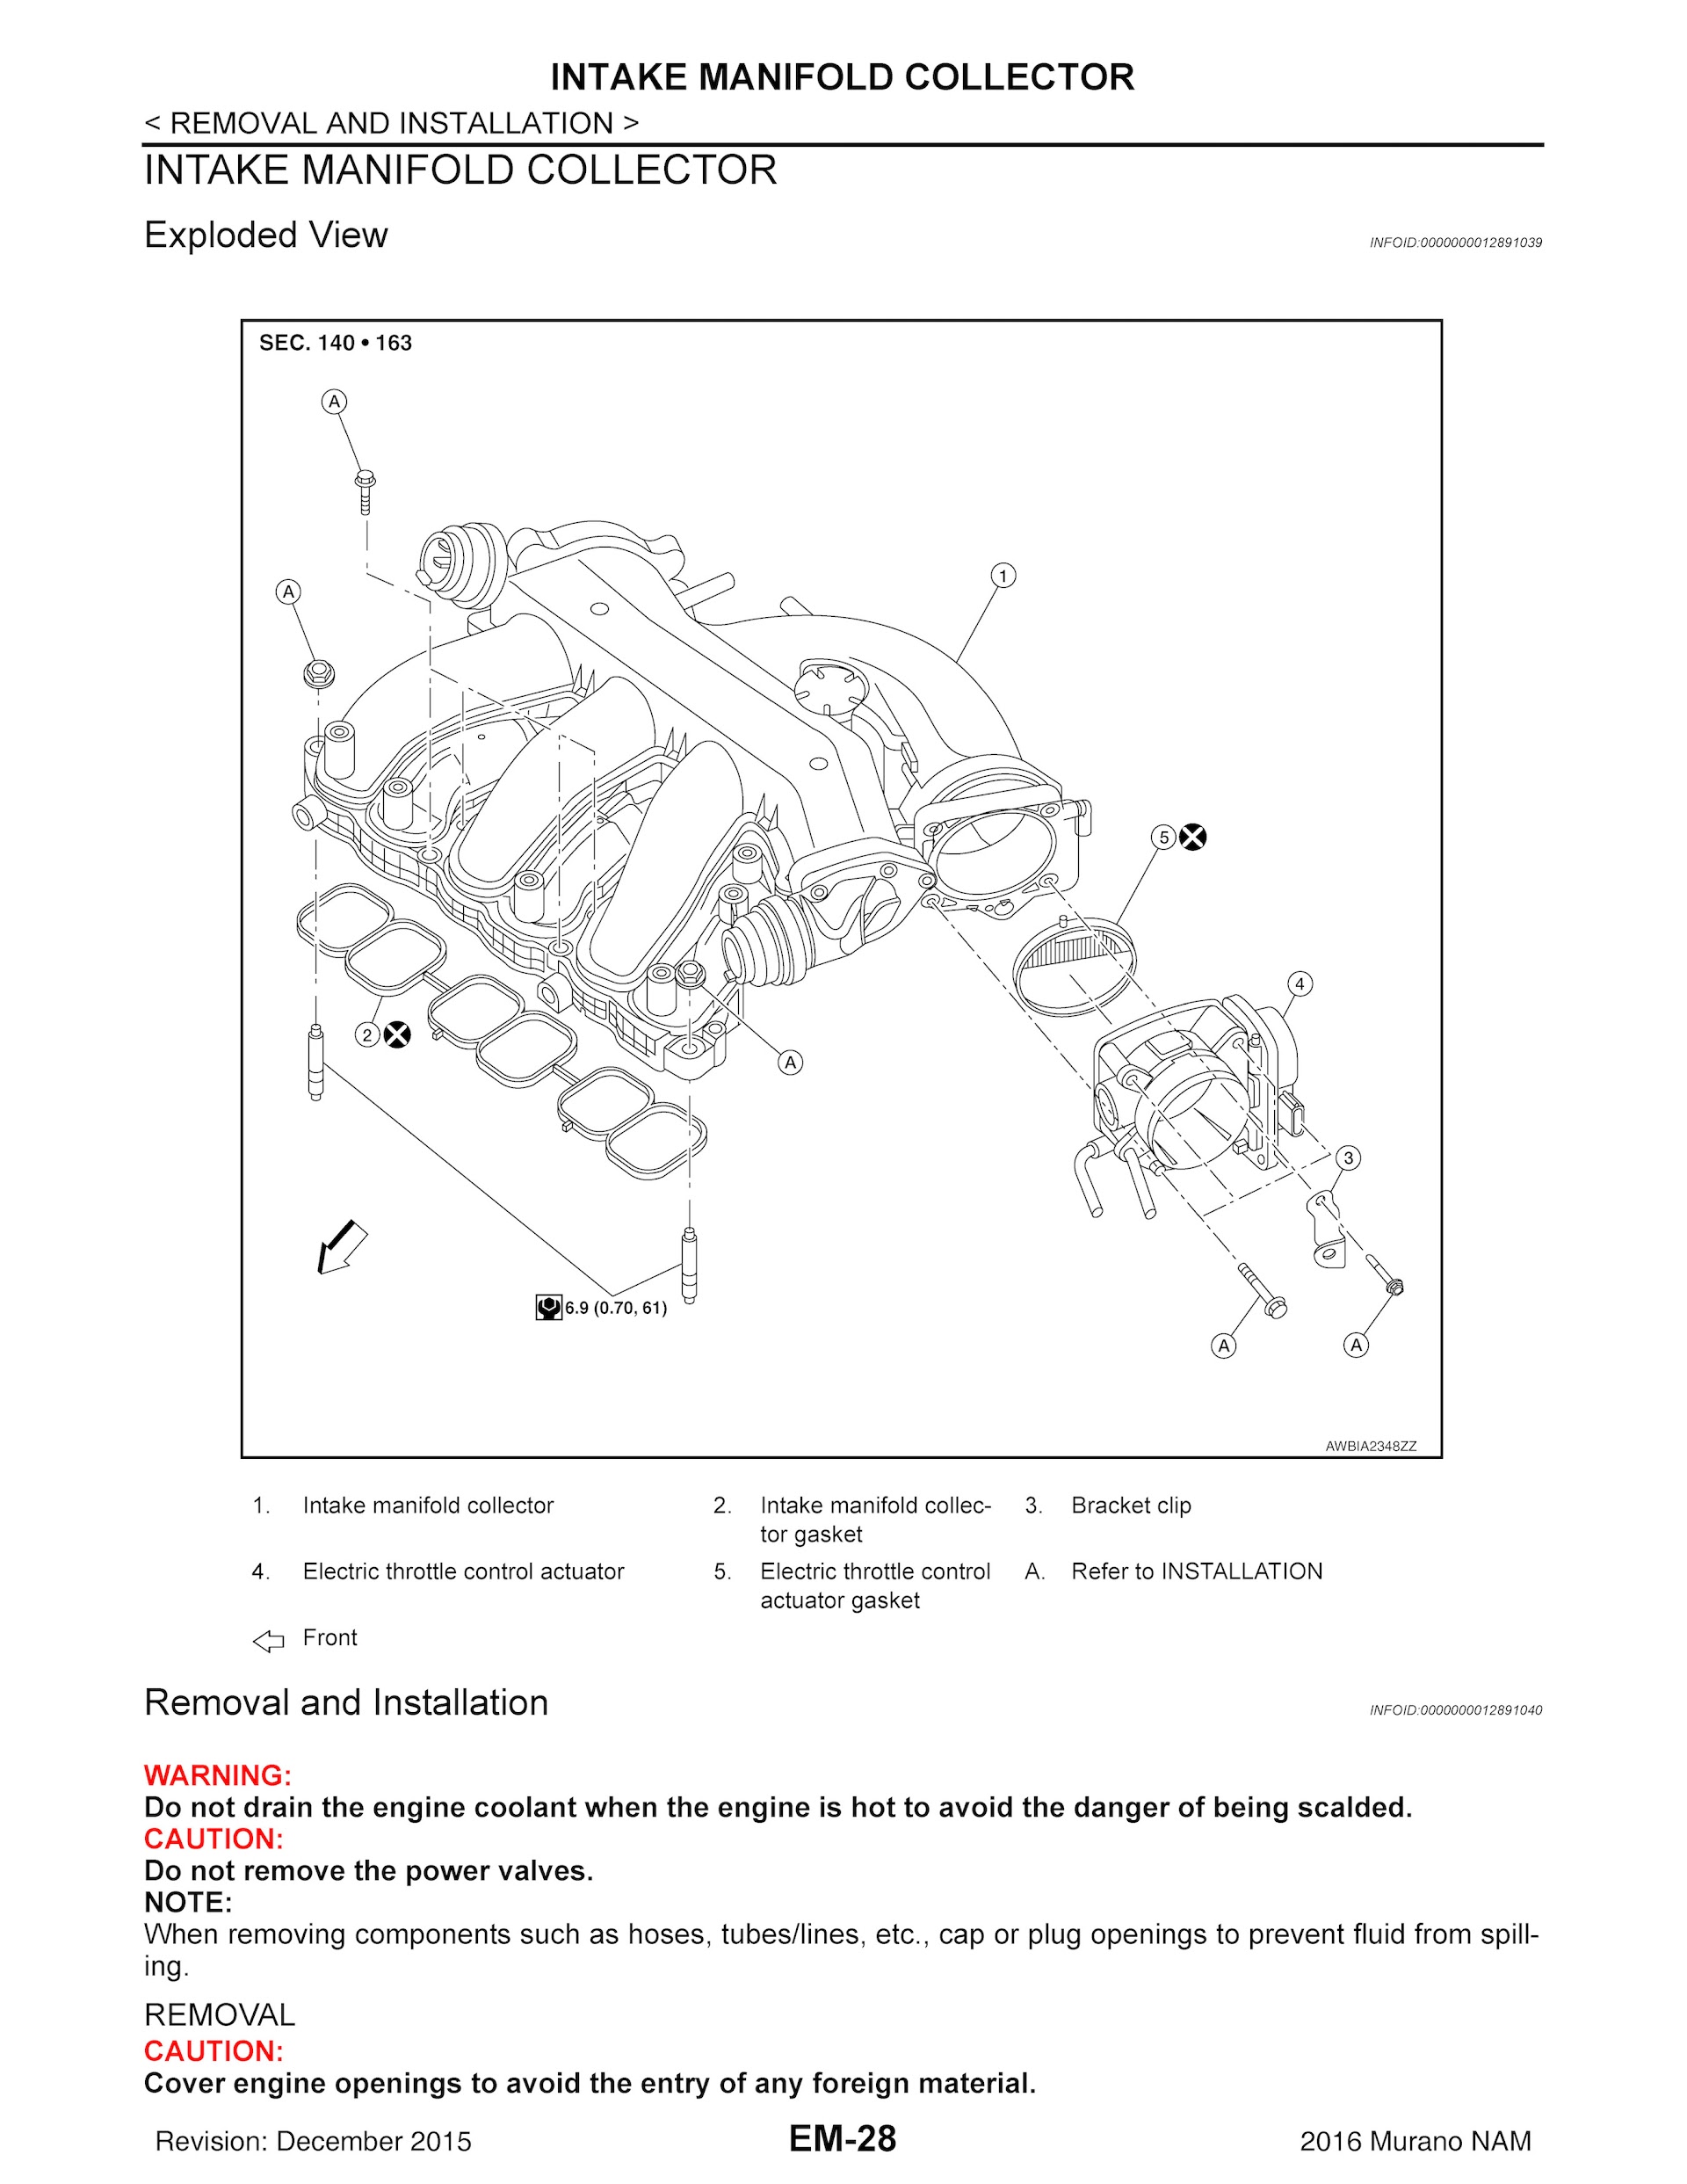 2016-2020 Nissan Murano Repair Manual, Intake Manifold Collector